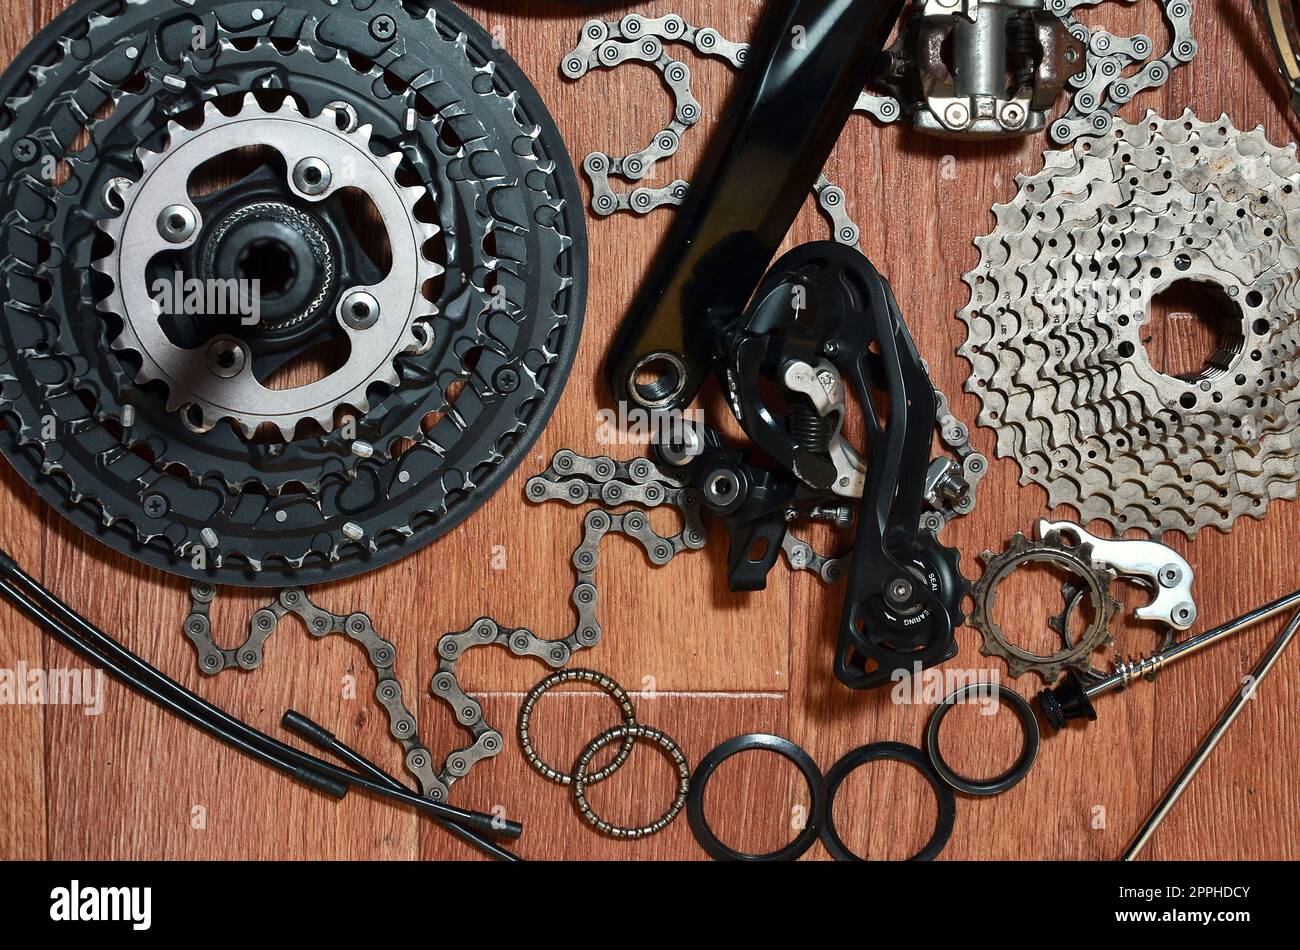 Molte diverse parti metalliche e componenti dell'equipaggiamento da running di una moto sportiva Foto Stock